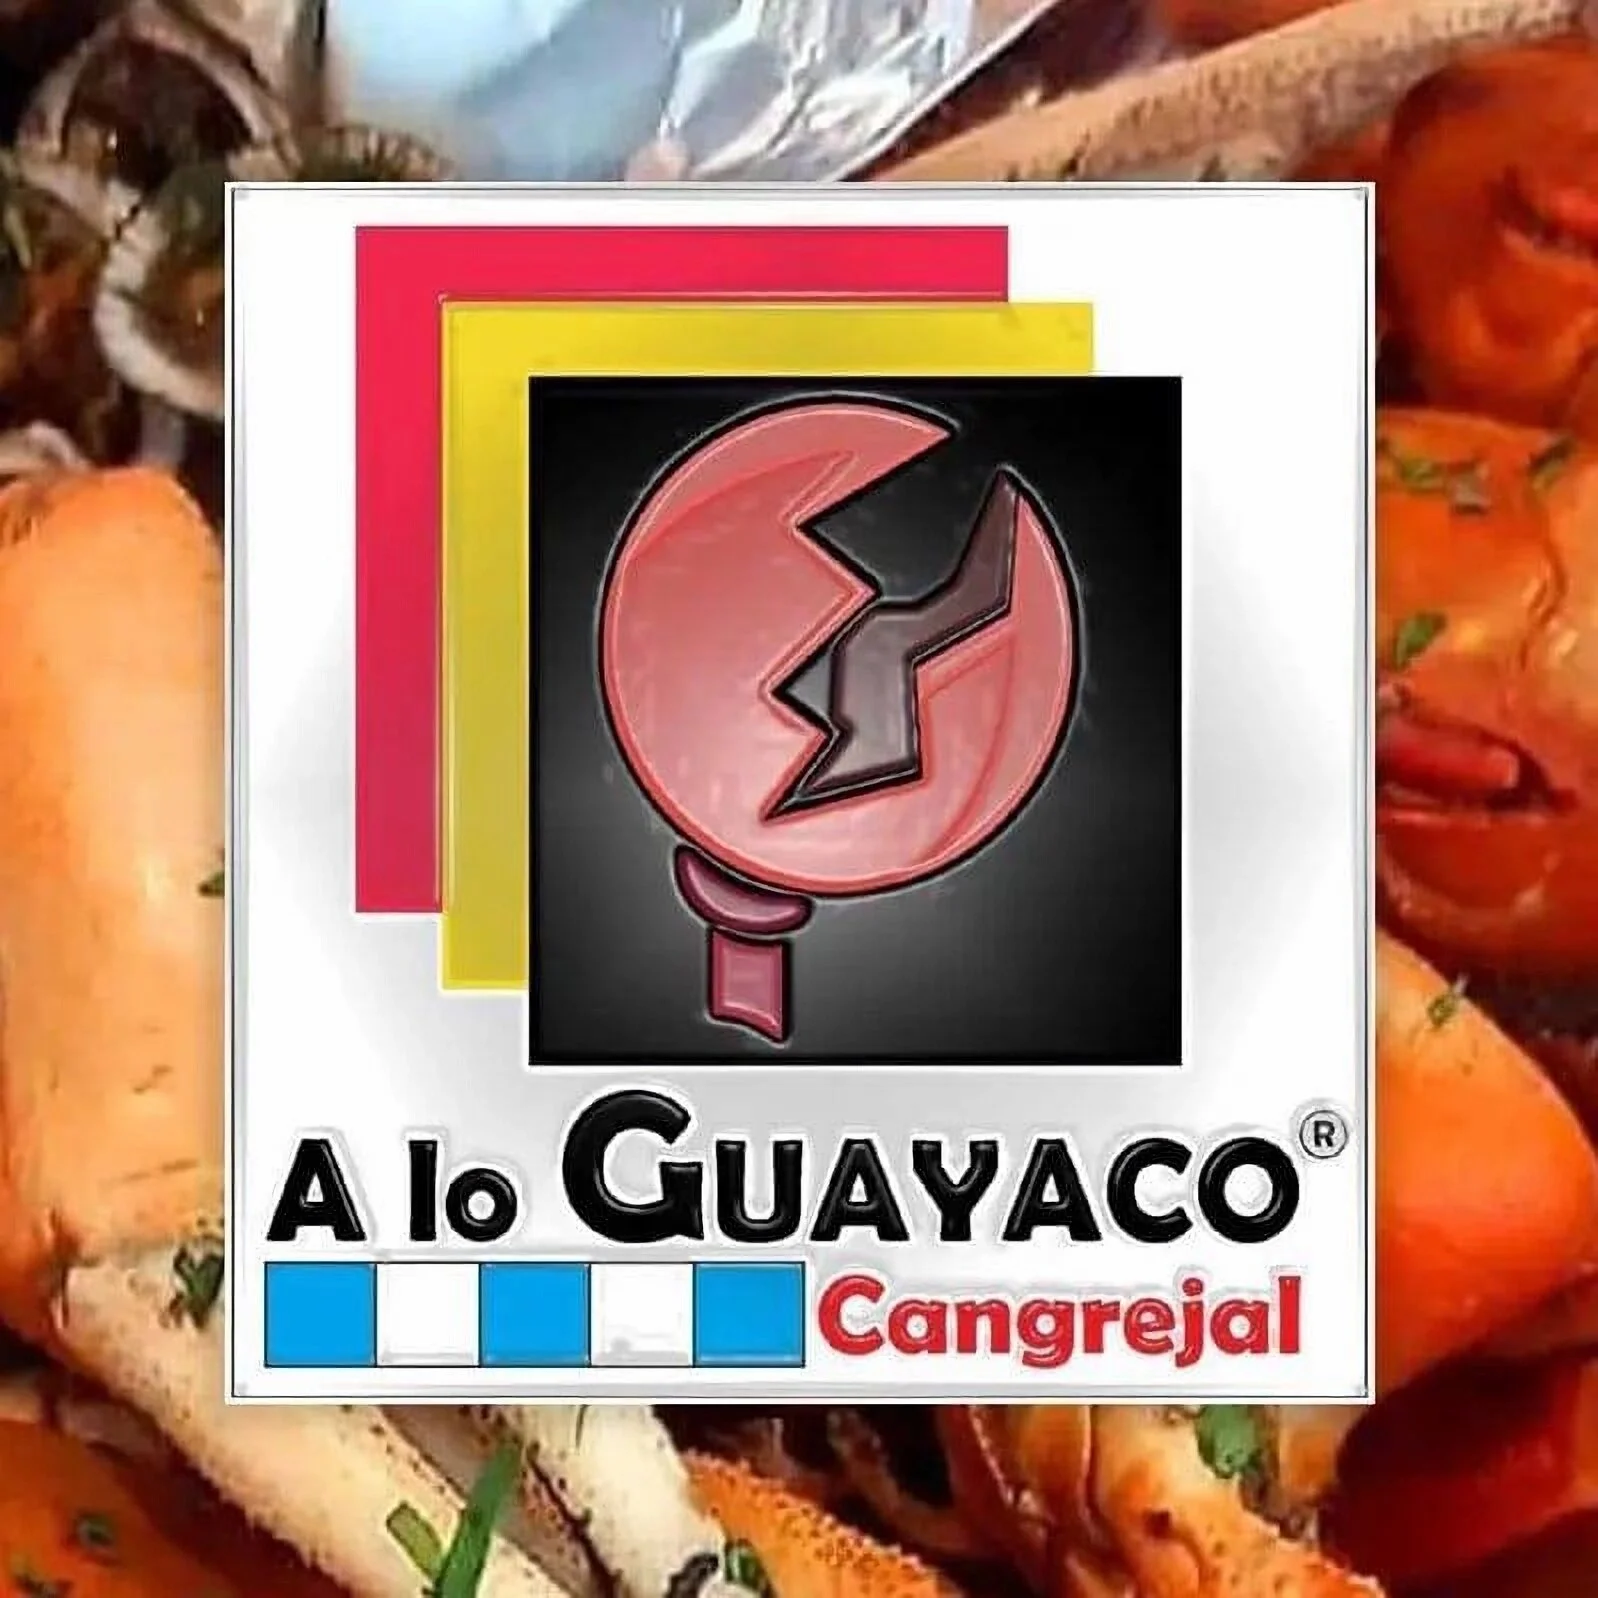 Restaurantes-a-lo-guayaco-cangrejal-quito-restaurante-de-especialidades-de-cangrejo-17769